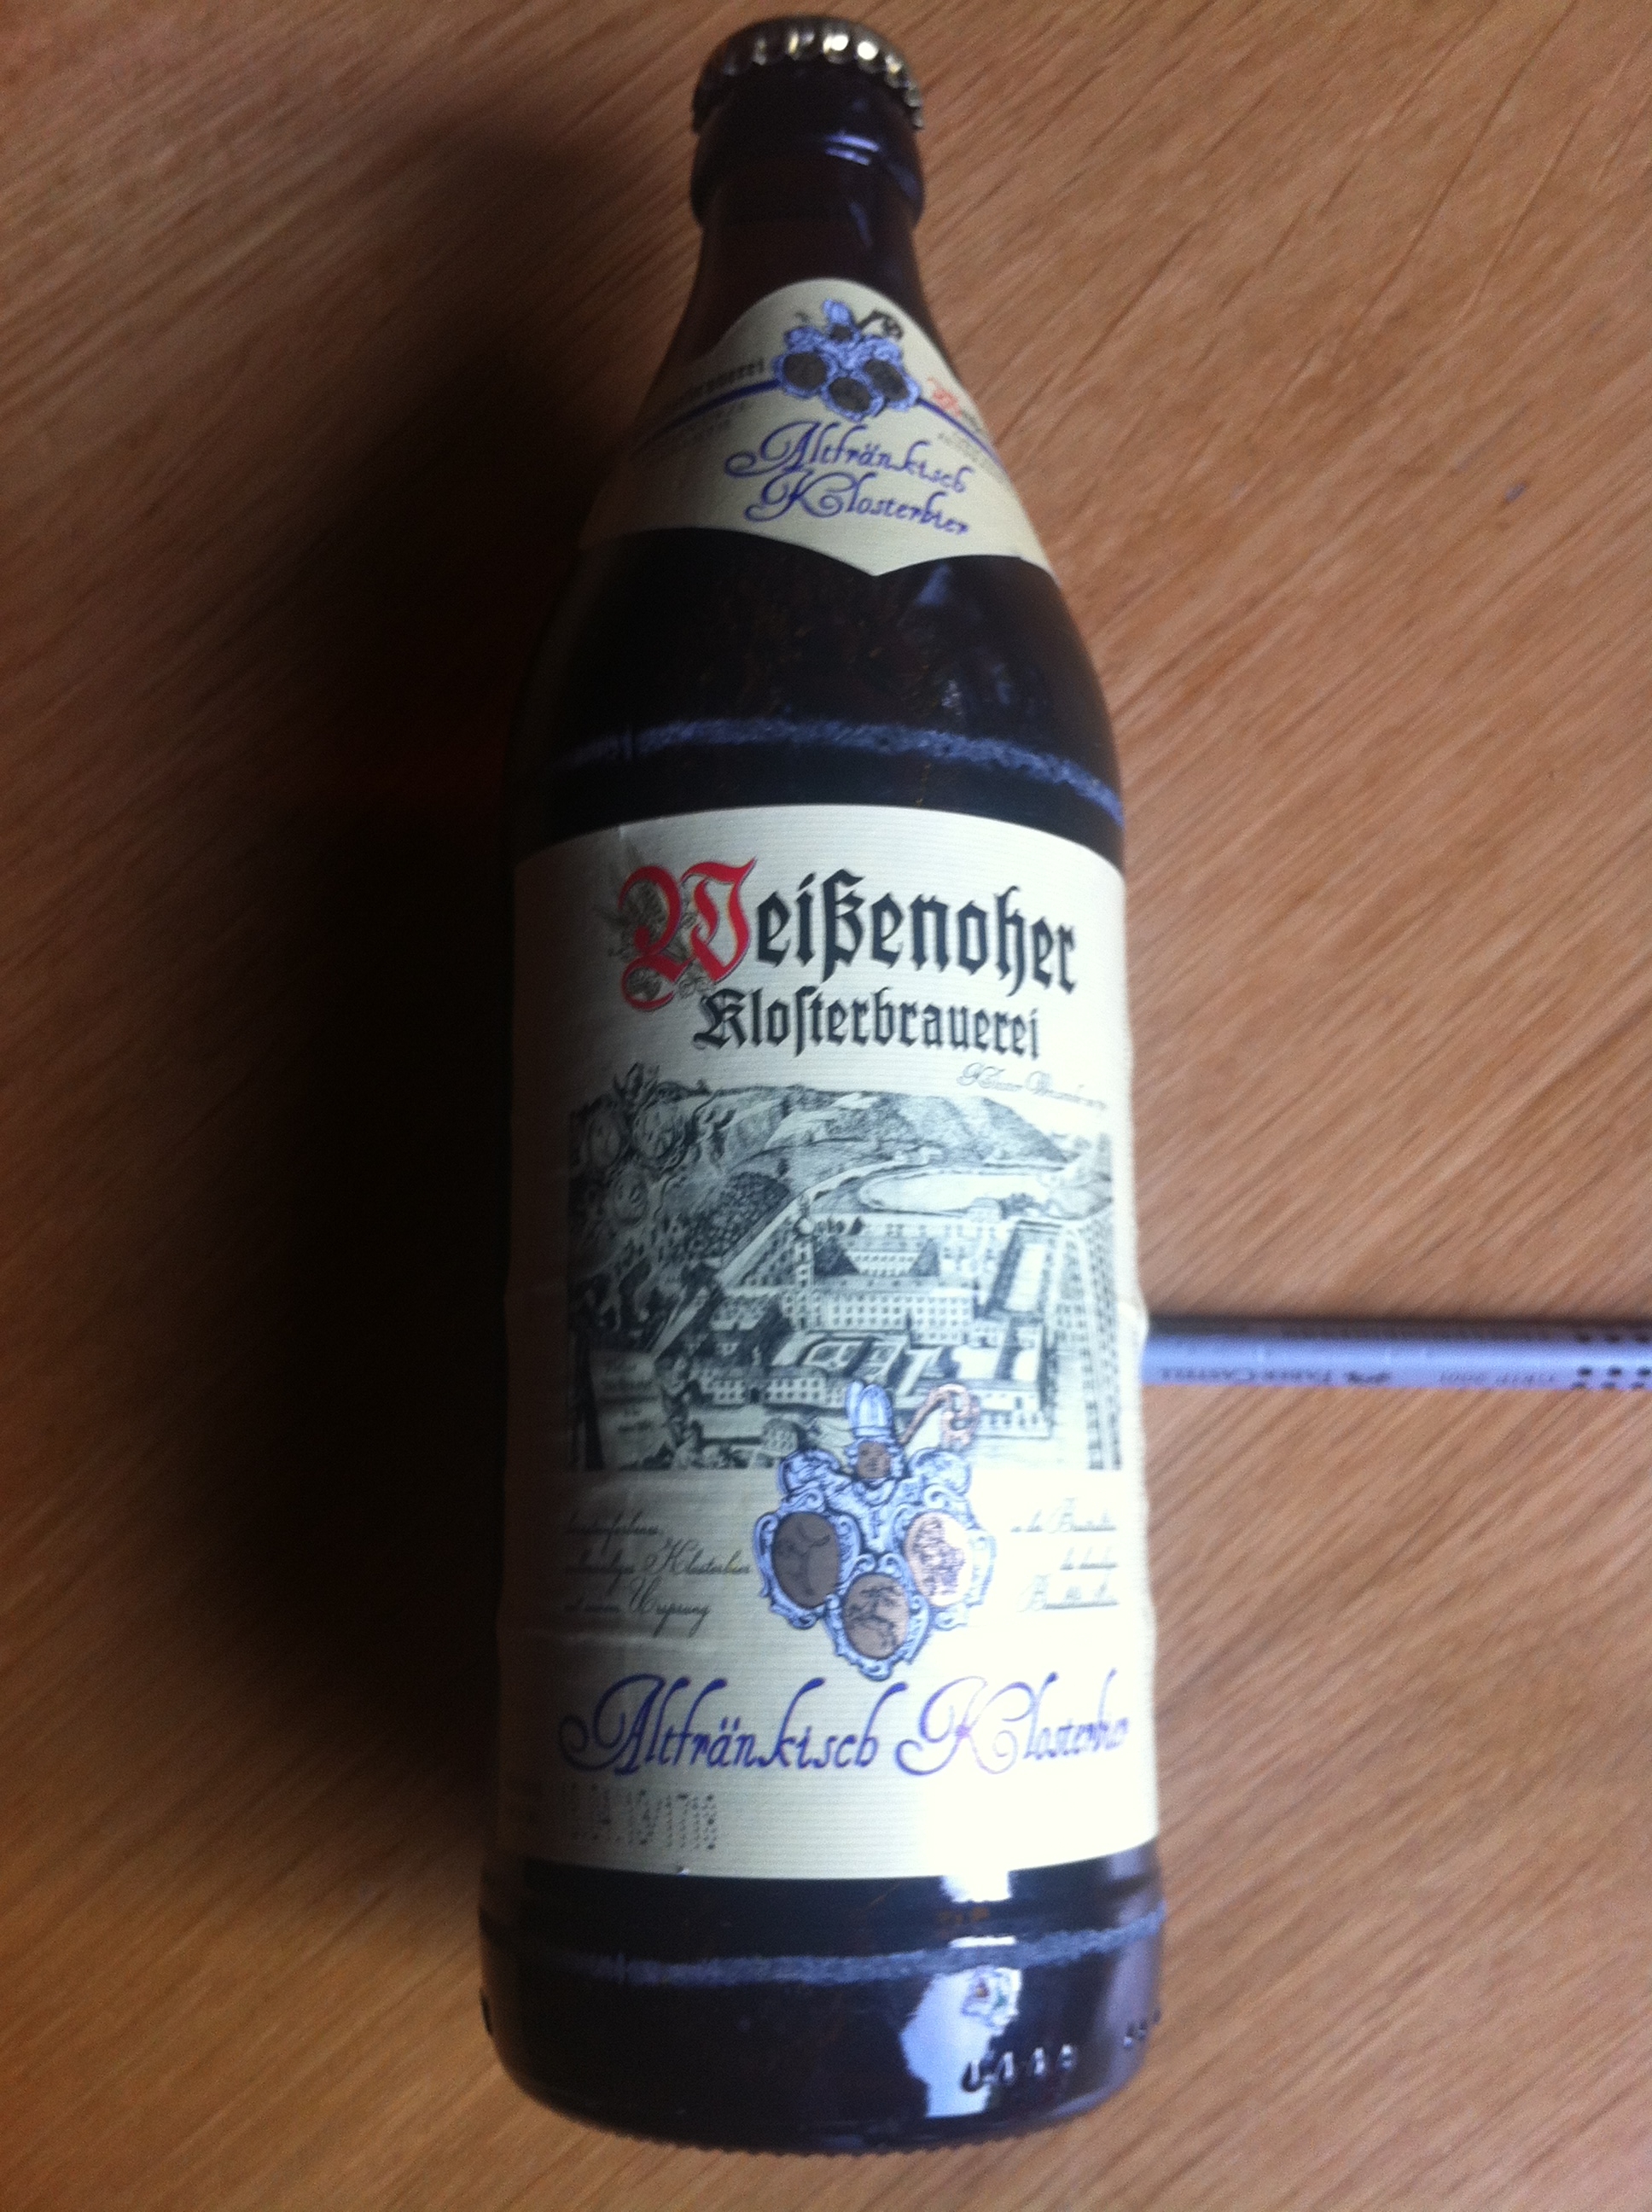 0,5 Liter Flasche aus dem HOL AB Markt in Delmenhorst - Fränkisches Export Bier :-) - Vielen Dank